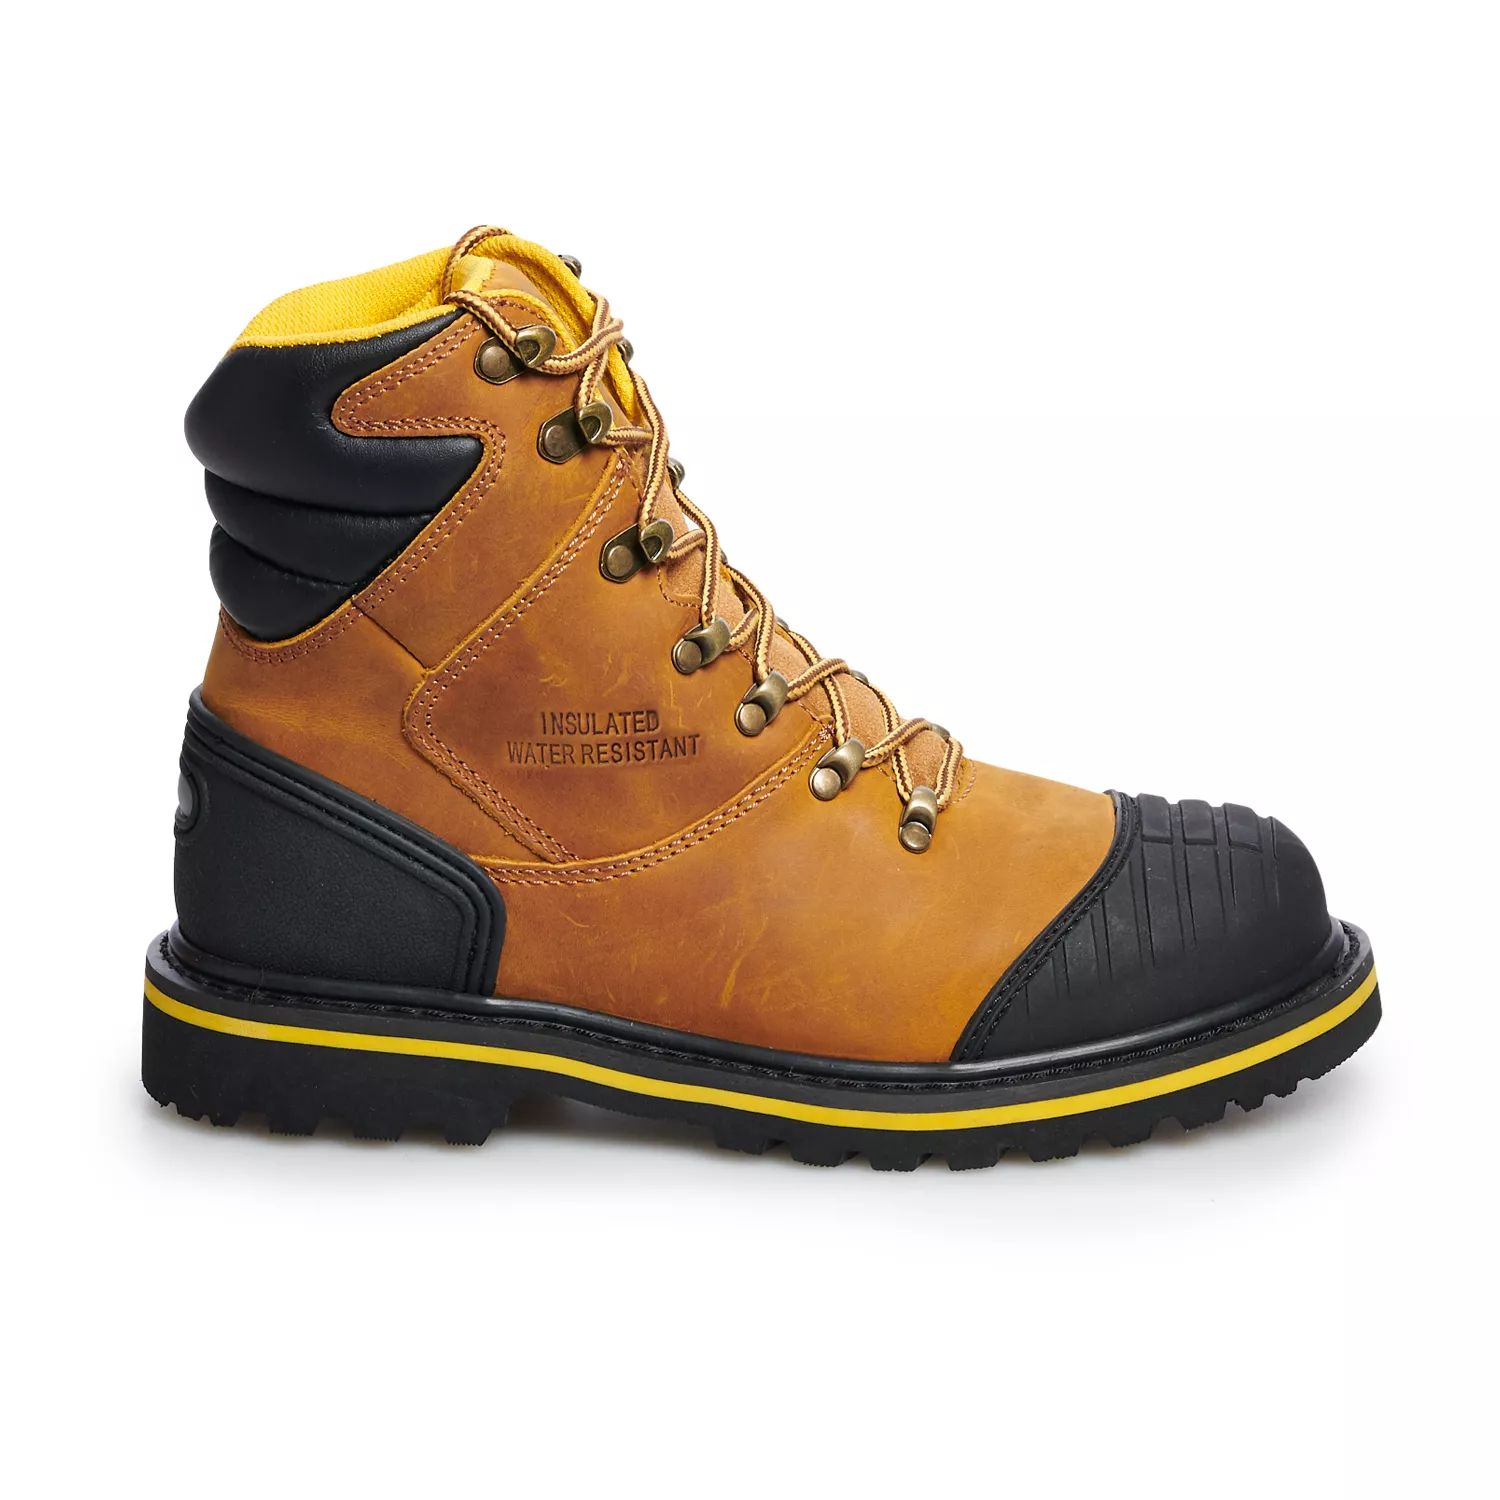 AdTec 9804 Мужские водонепроницаемые рабочие ботинки со стальным носком водонепроницаемые мужские защитные рабочие ботинки теплые зимние ботинки со стальным носком рабочая обувь защитная обувь против проколо